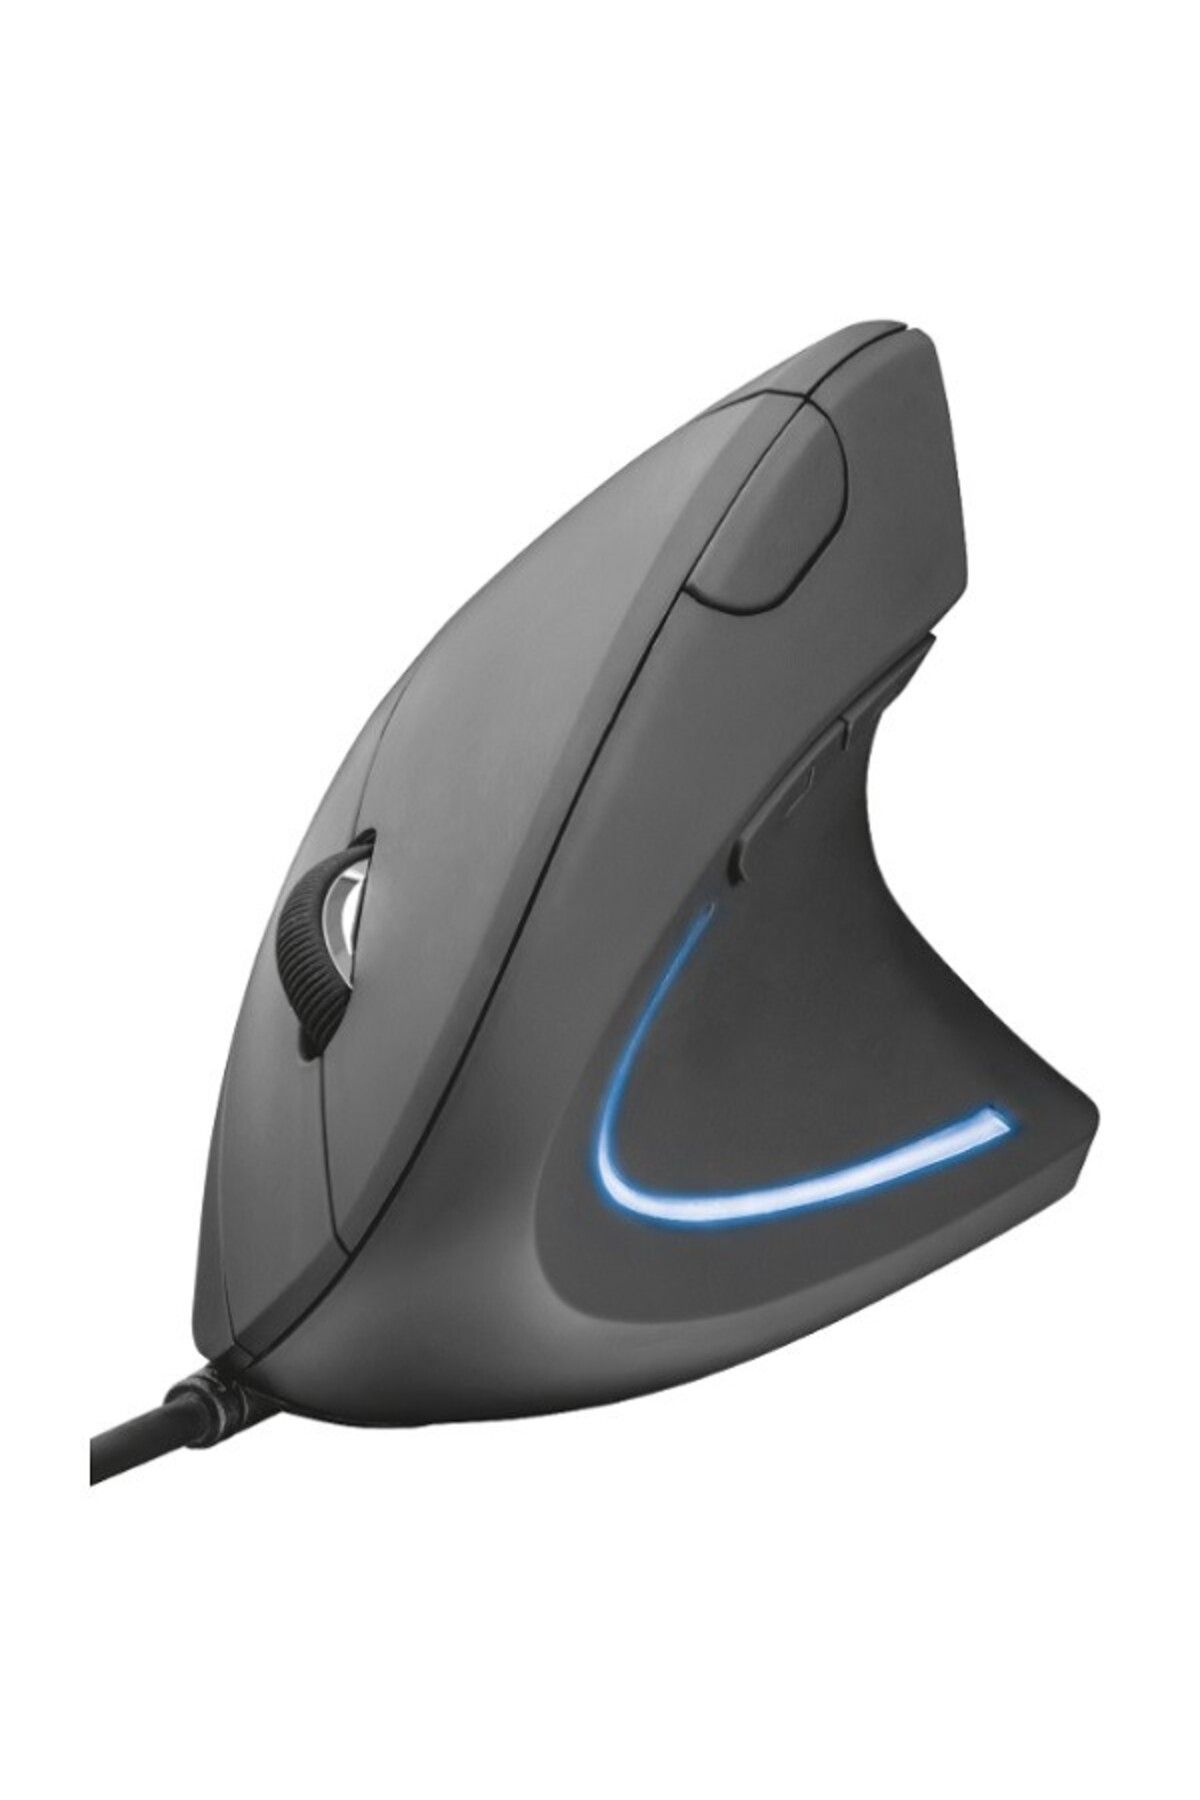 Techmaster Dikey Optik Ergonomik Mouse Fare Kablolu Bilek Korumalı Gaming